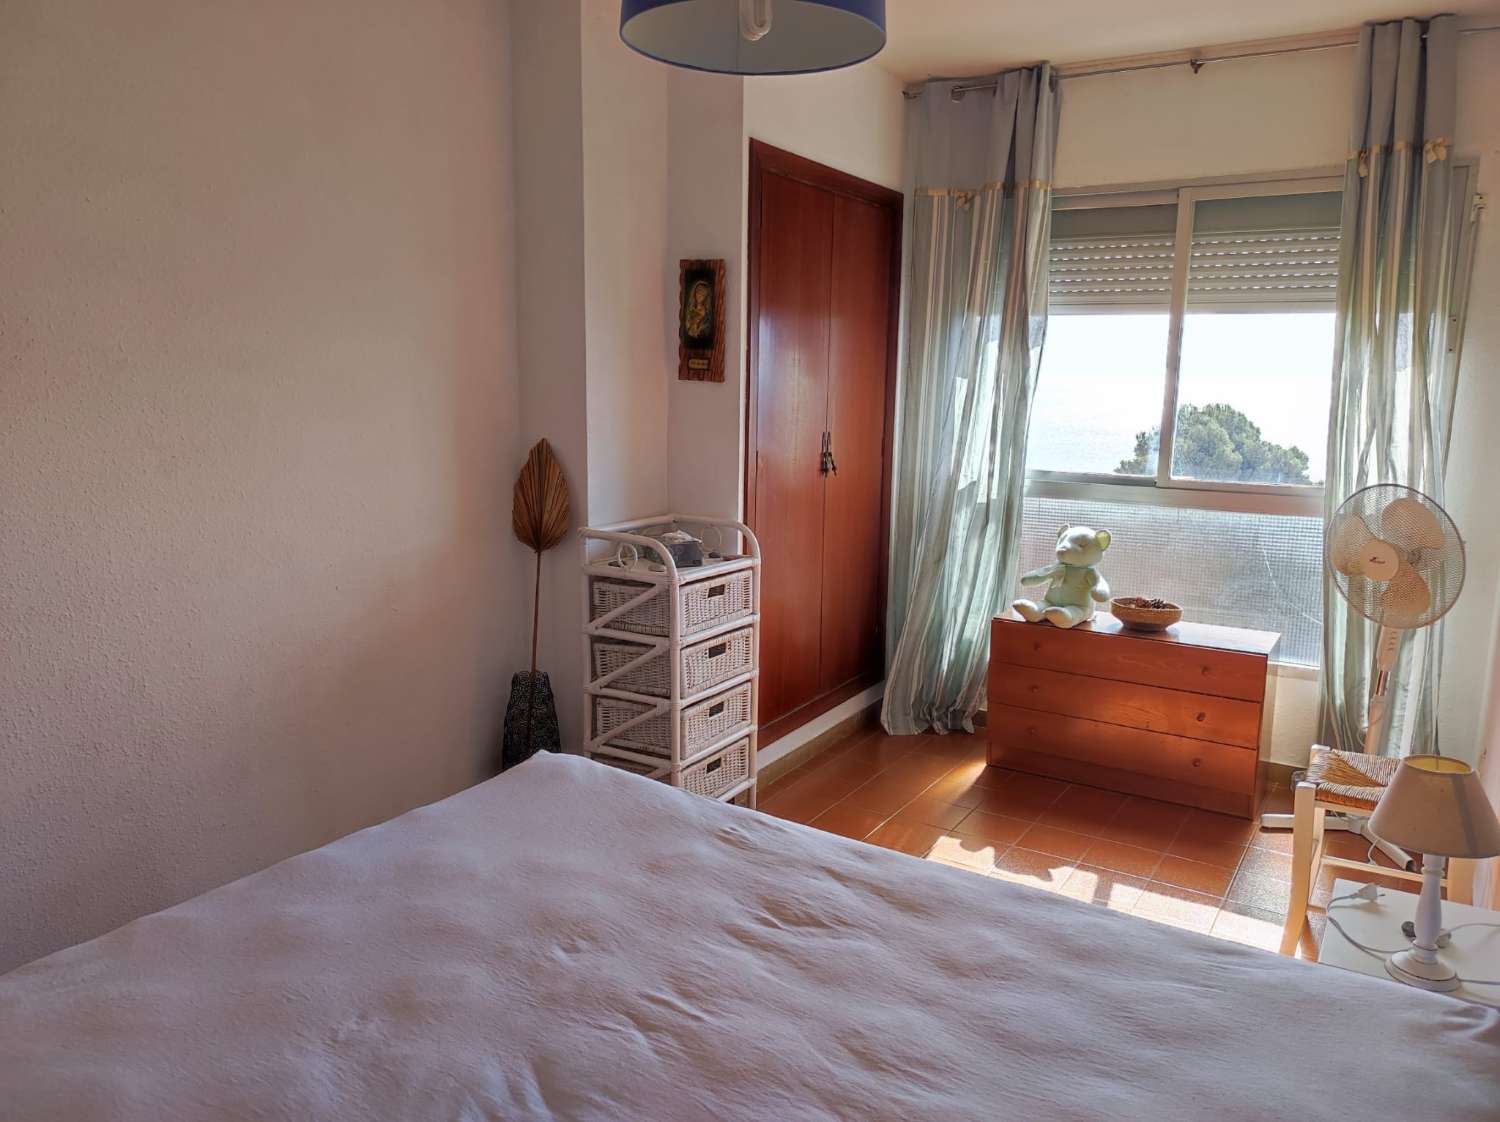 Apartamento con vistas al mar!